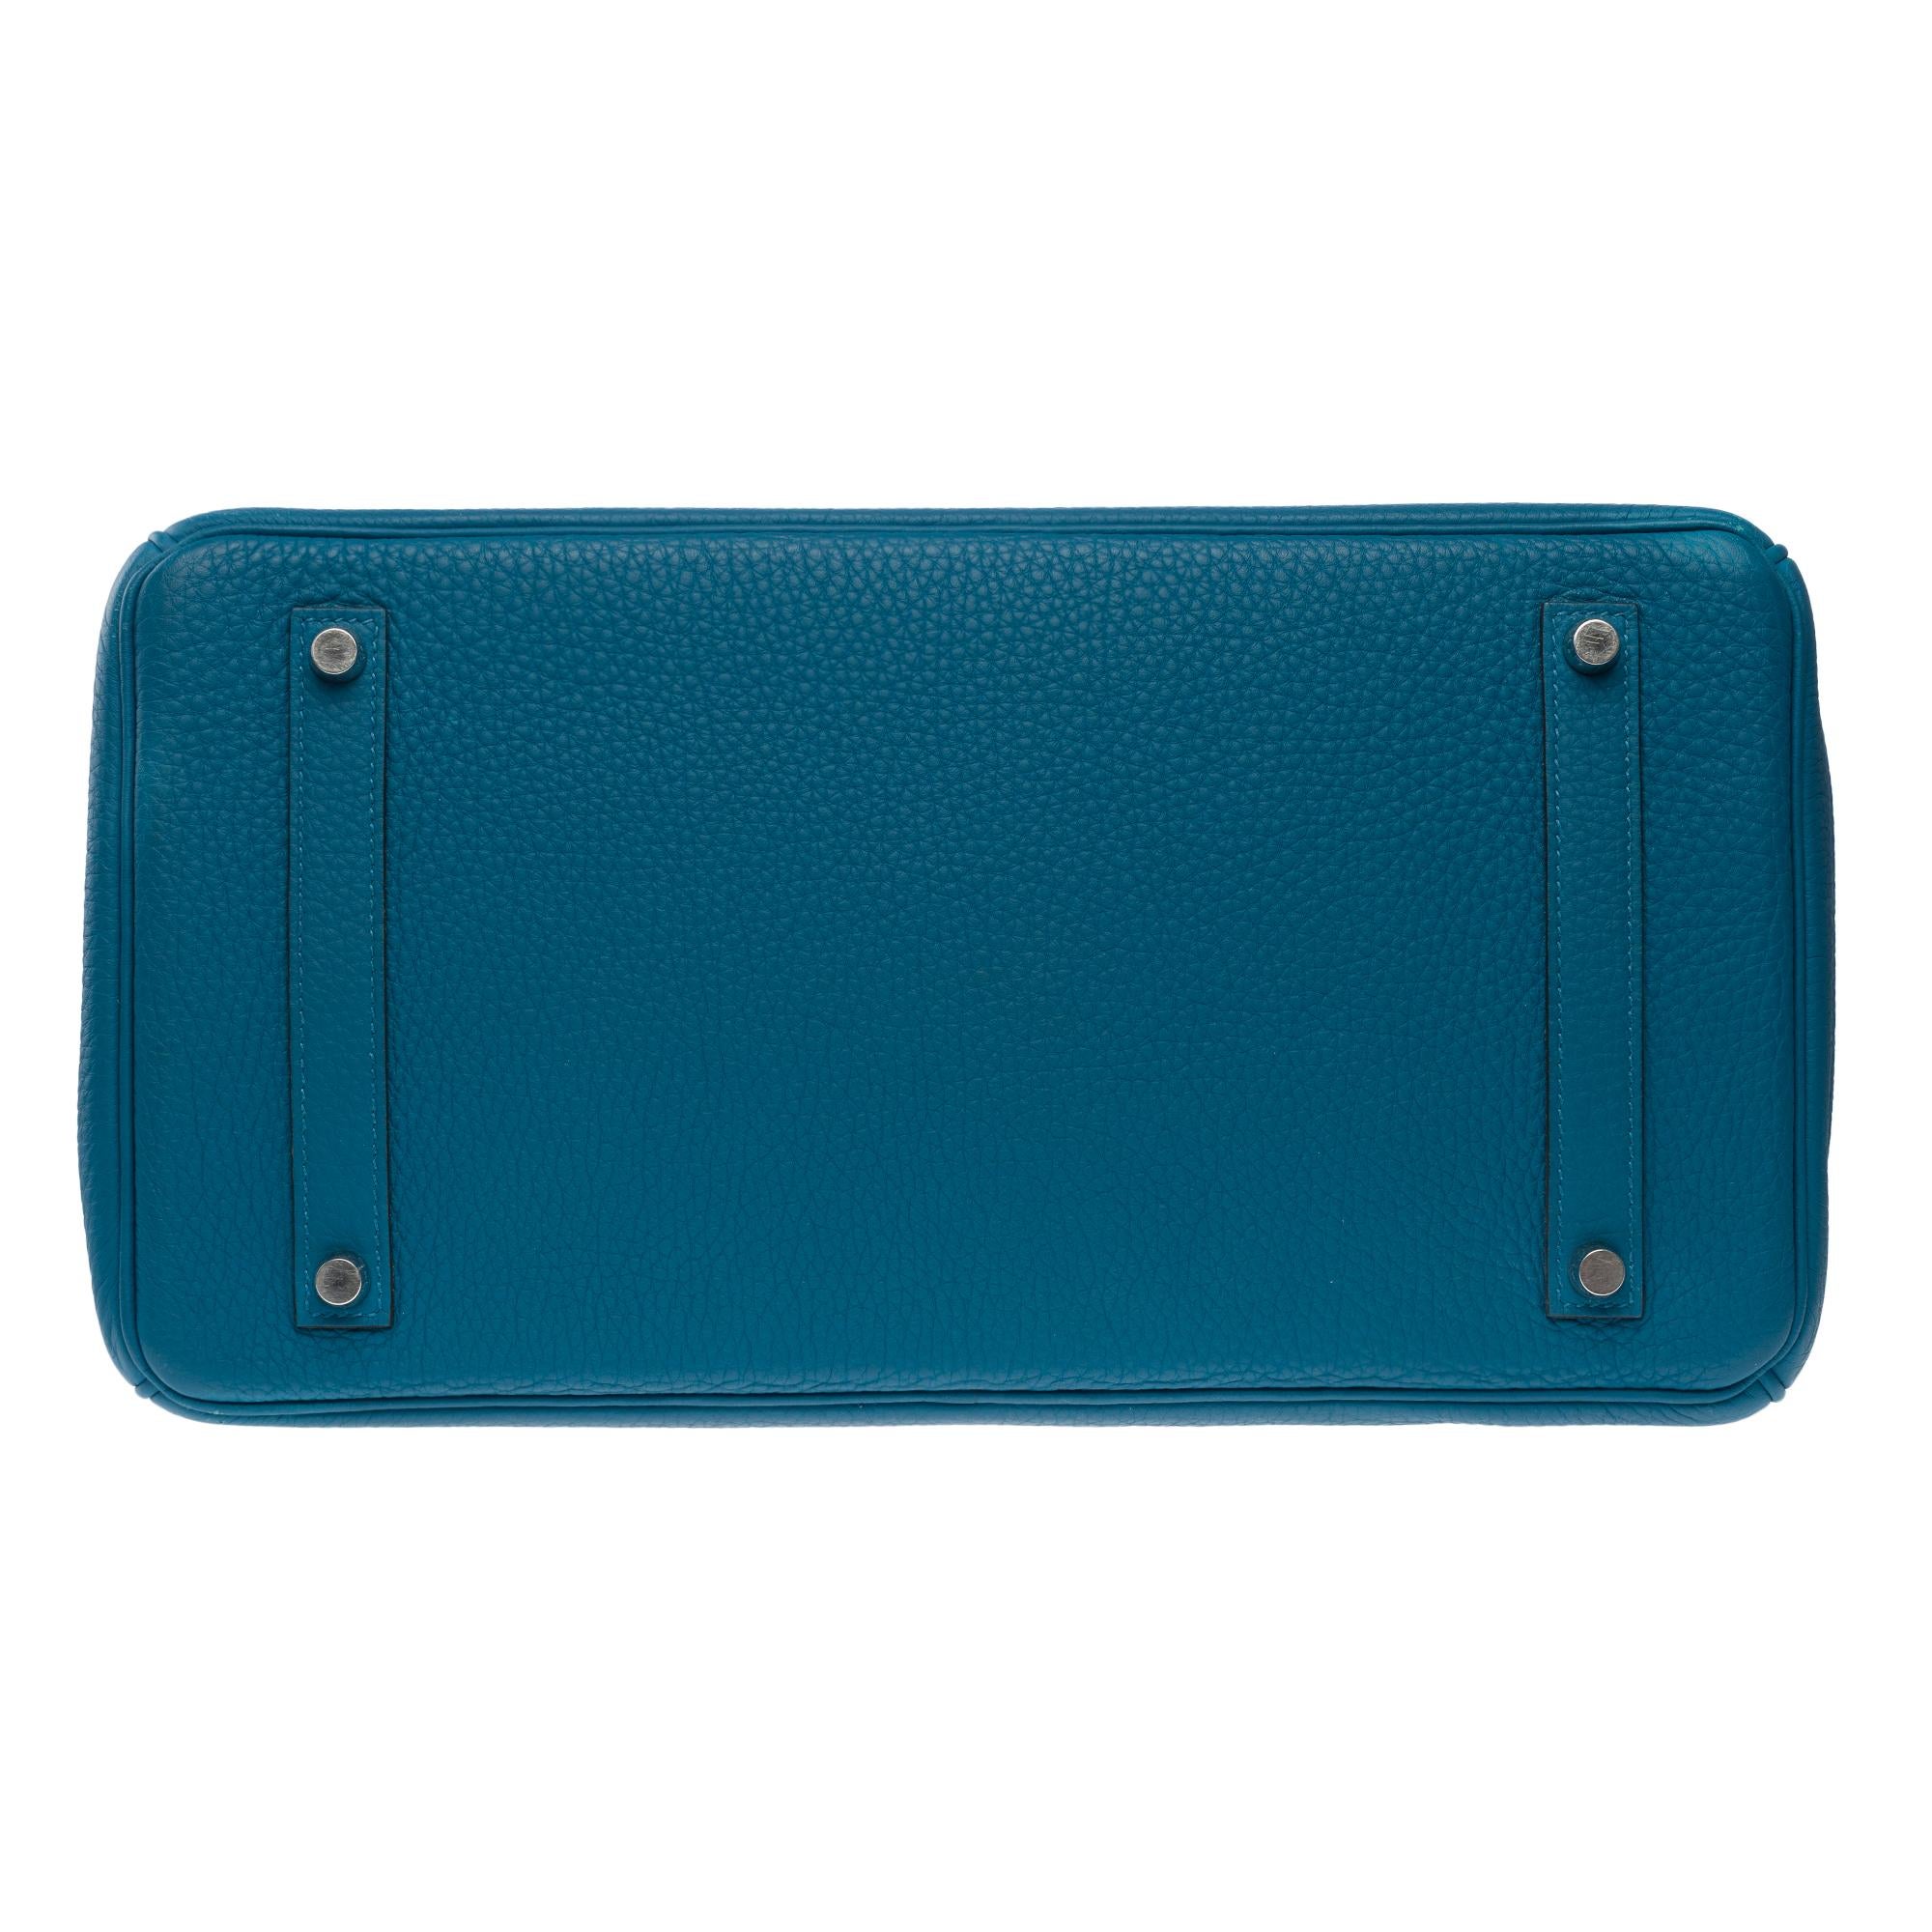 Amazing Hermes Birkin 35 handbag in Bleu Colvert Togo leather, SHW For Sale 7